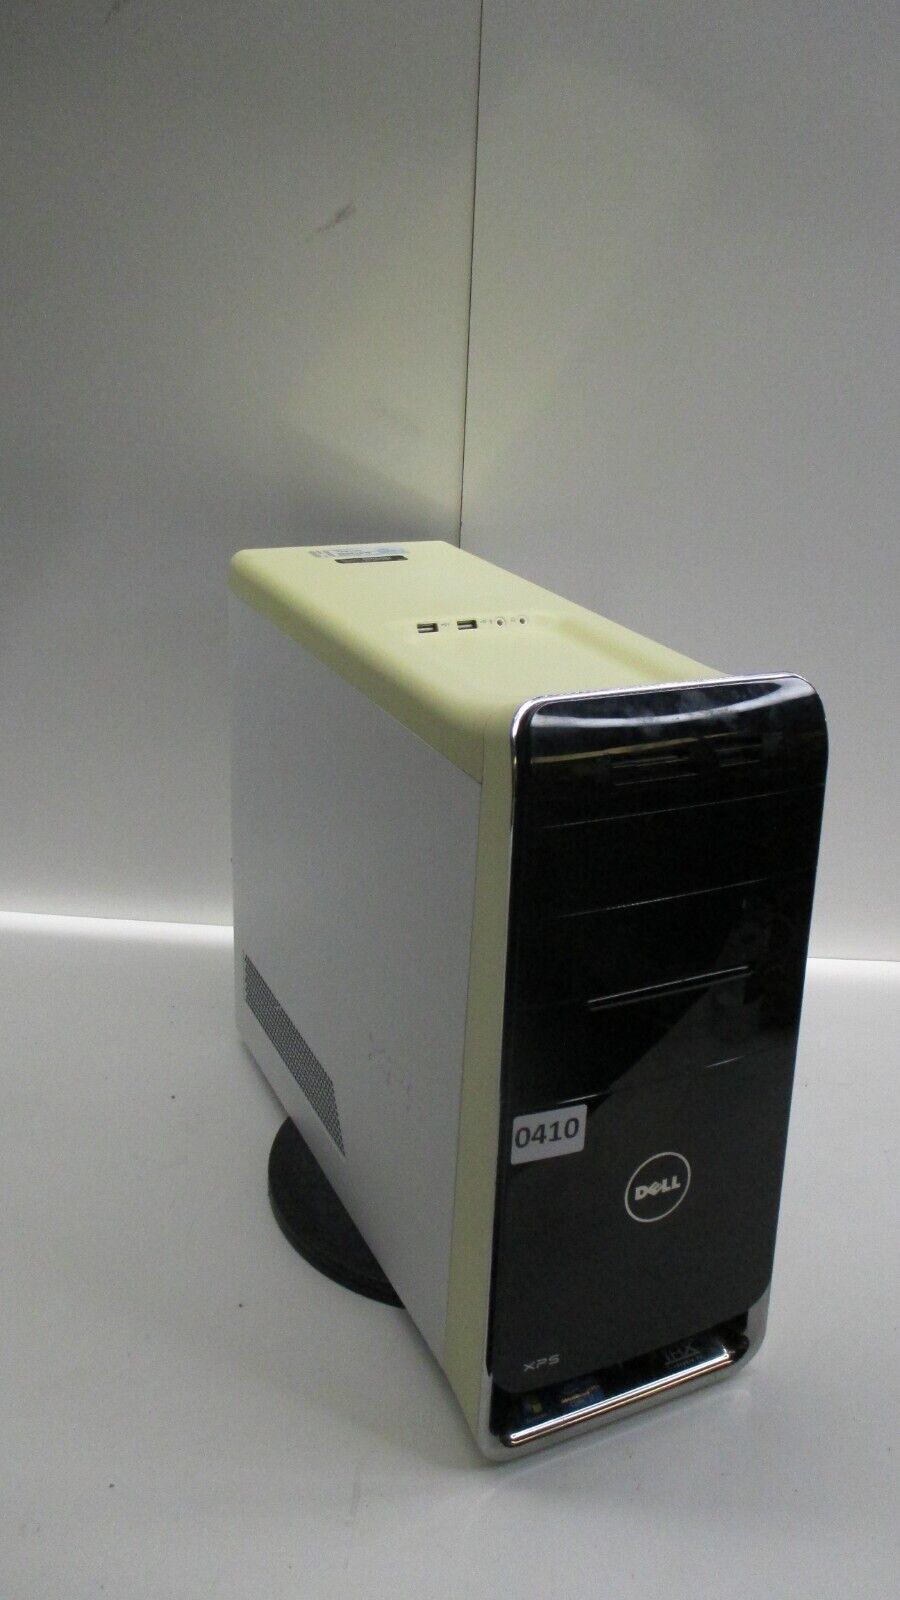 Dell XPS 8300 Desktop Computer Intel Core i7-2600 12GB Ram No HDD